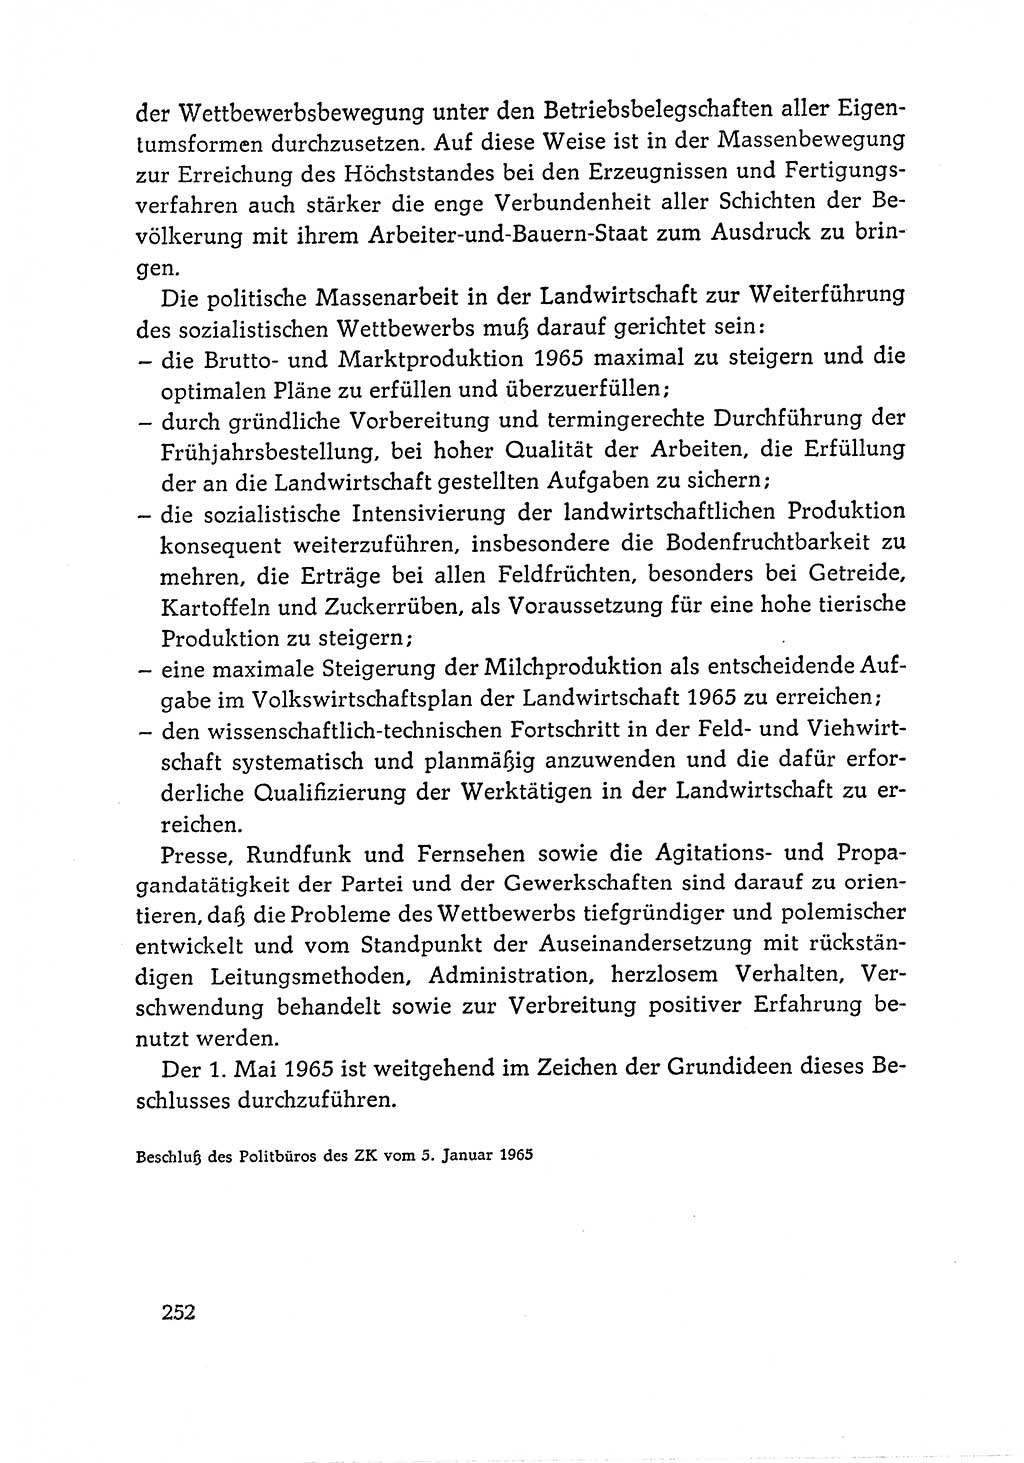 Dokumente der Sozialistischen Einheitspartei Deutschlands (SED) [Deutsche Demokratische Republik (DDR)] 1964-1965, Seite 252 (Dok. SED DDR 1964-1965, S. 252)